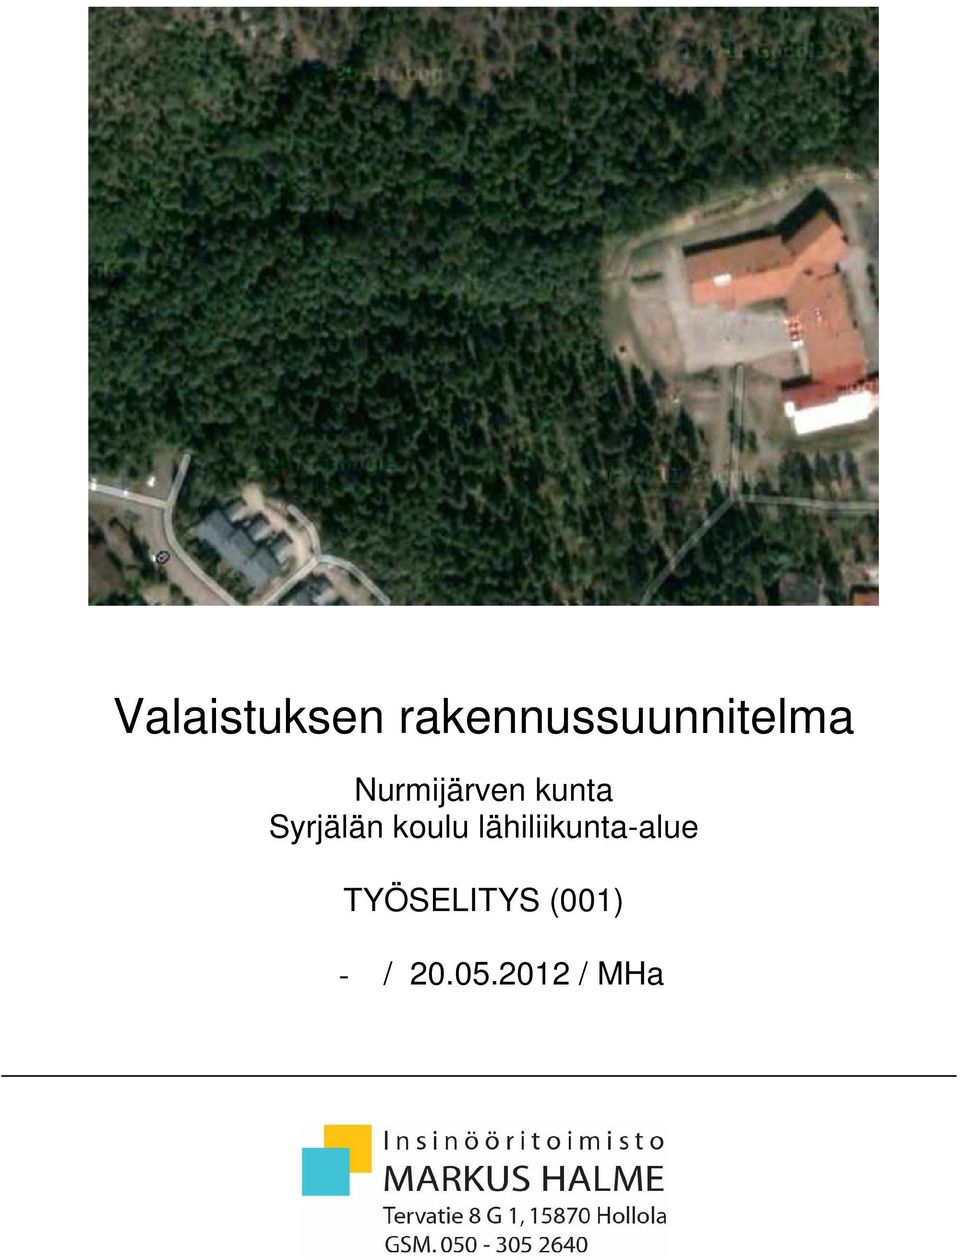 Nurmijärven kunta Syrjälän